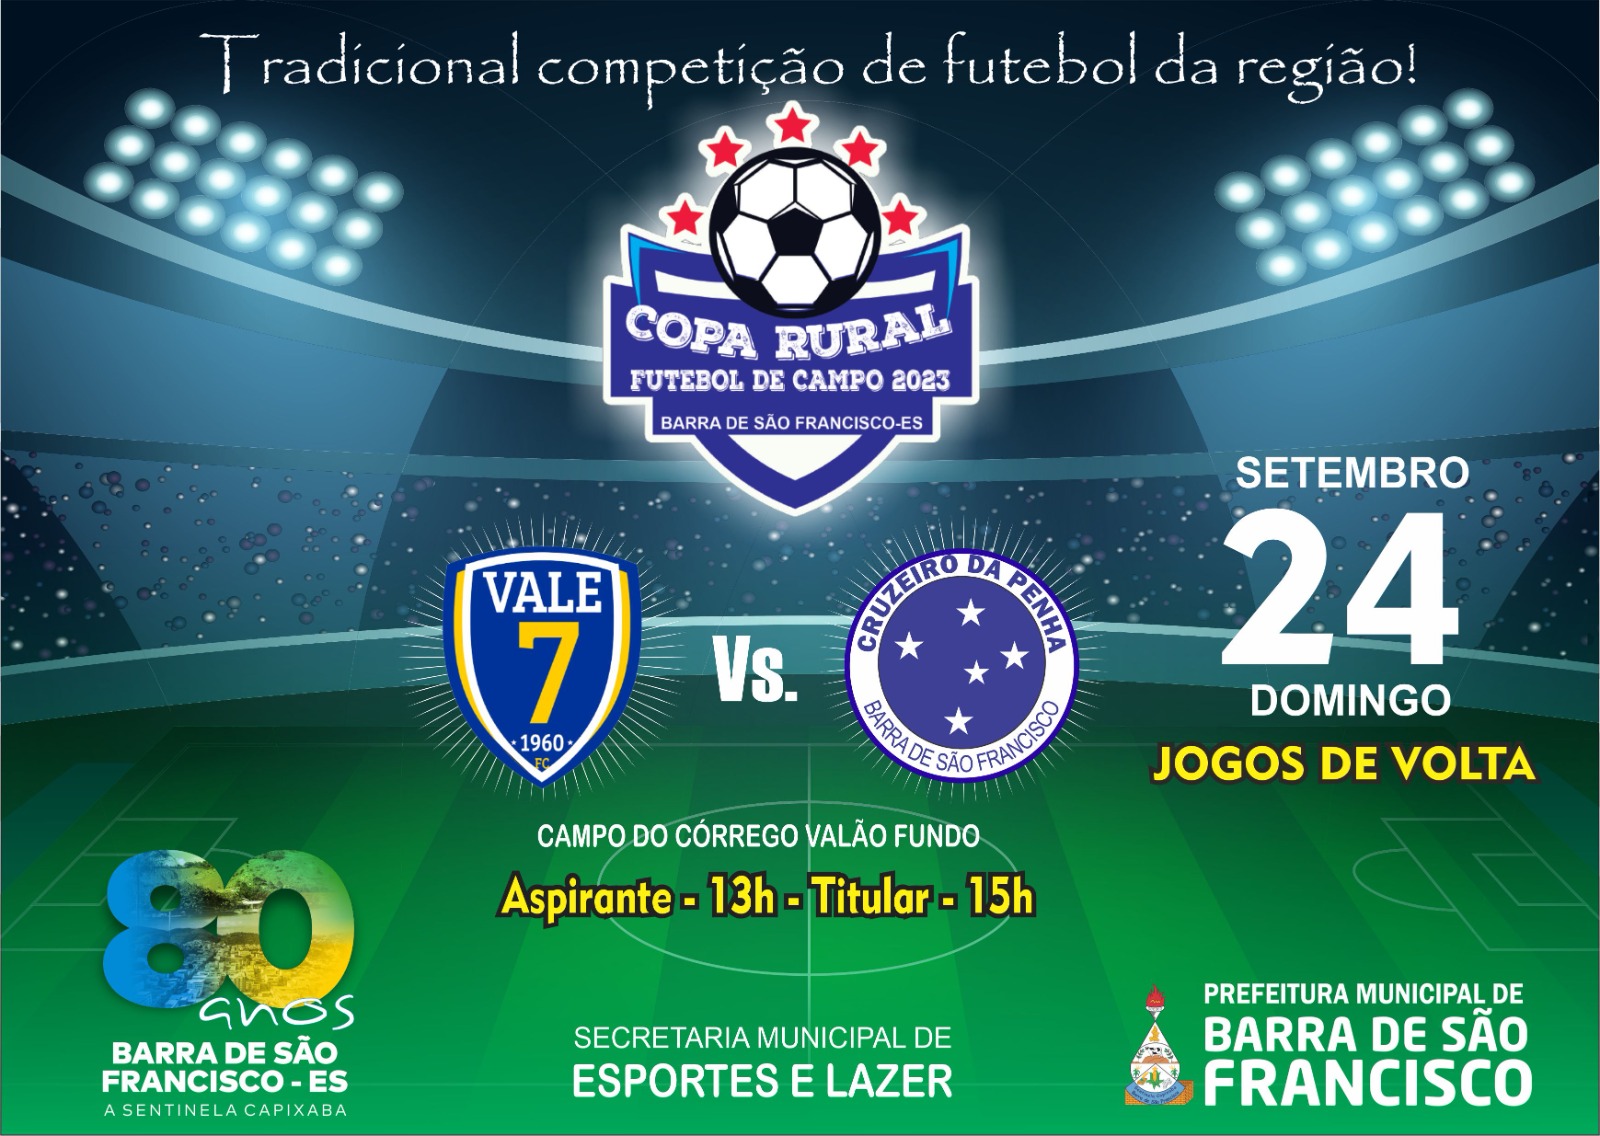 Imagem da notícia: Vale 7 recebe Cruzeiro da Penha para os jogos de volta da próxima rodada da Copa Rural